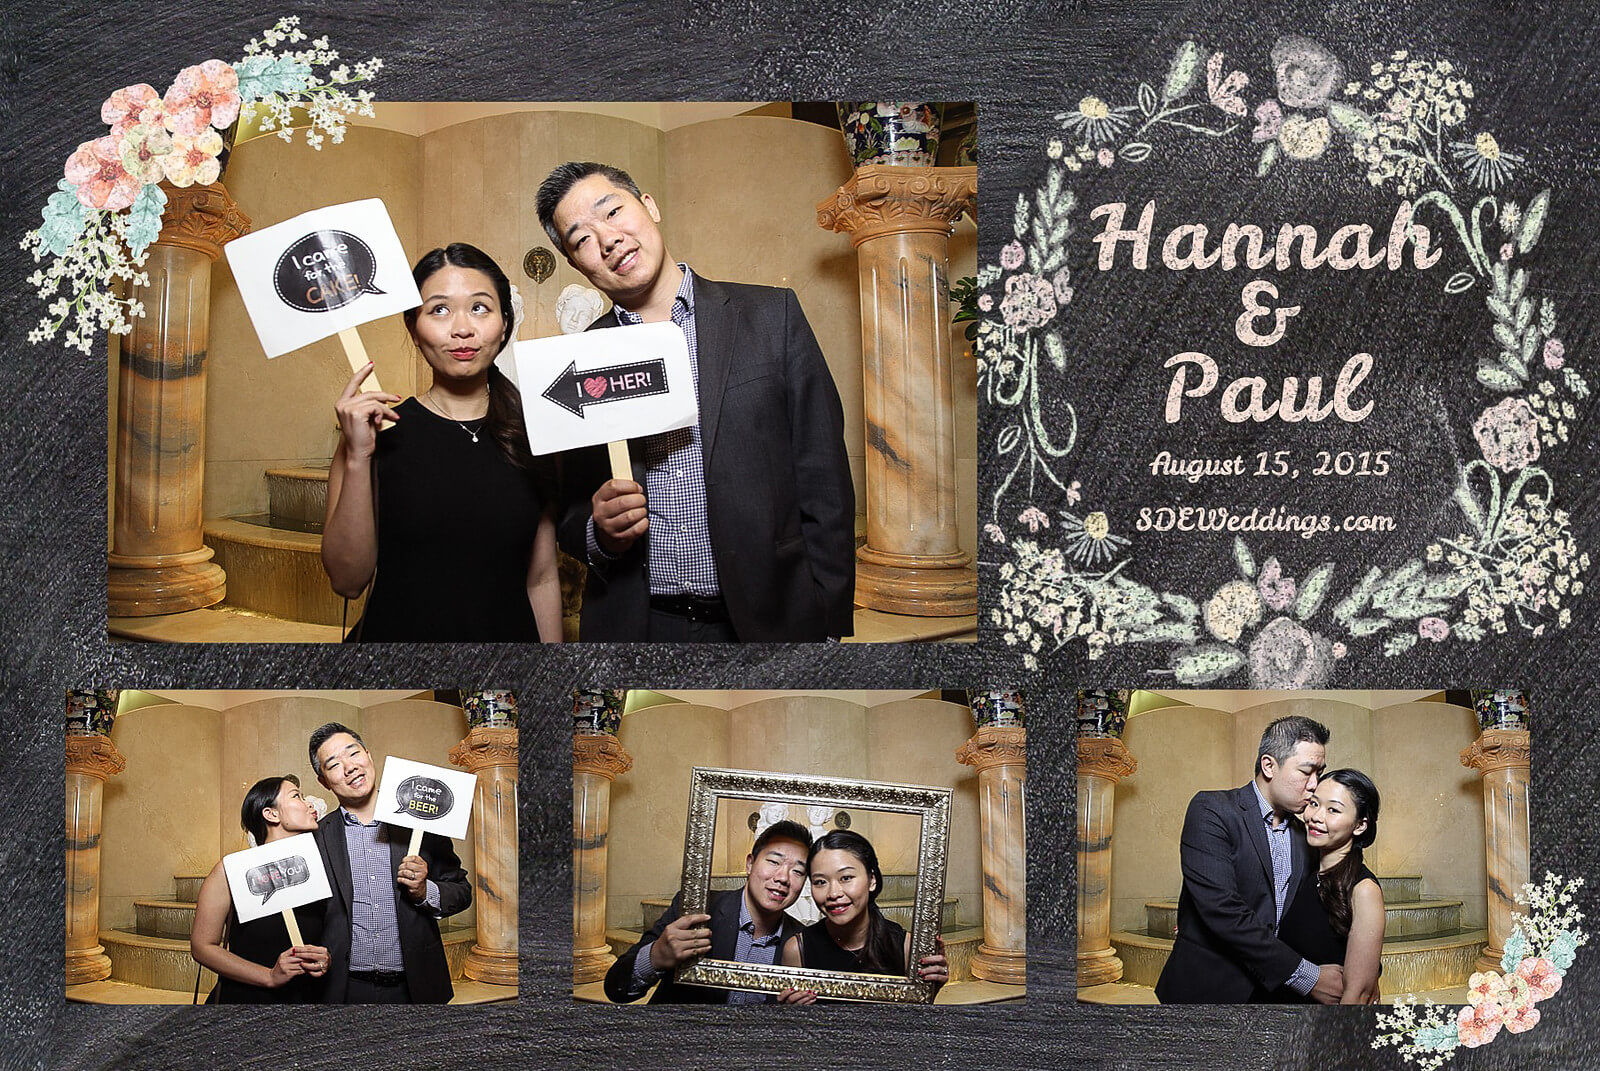 Markham Premiere Banquet Wedding Photobooth Rental 6